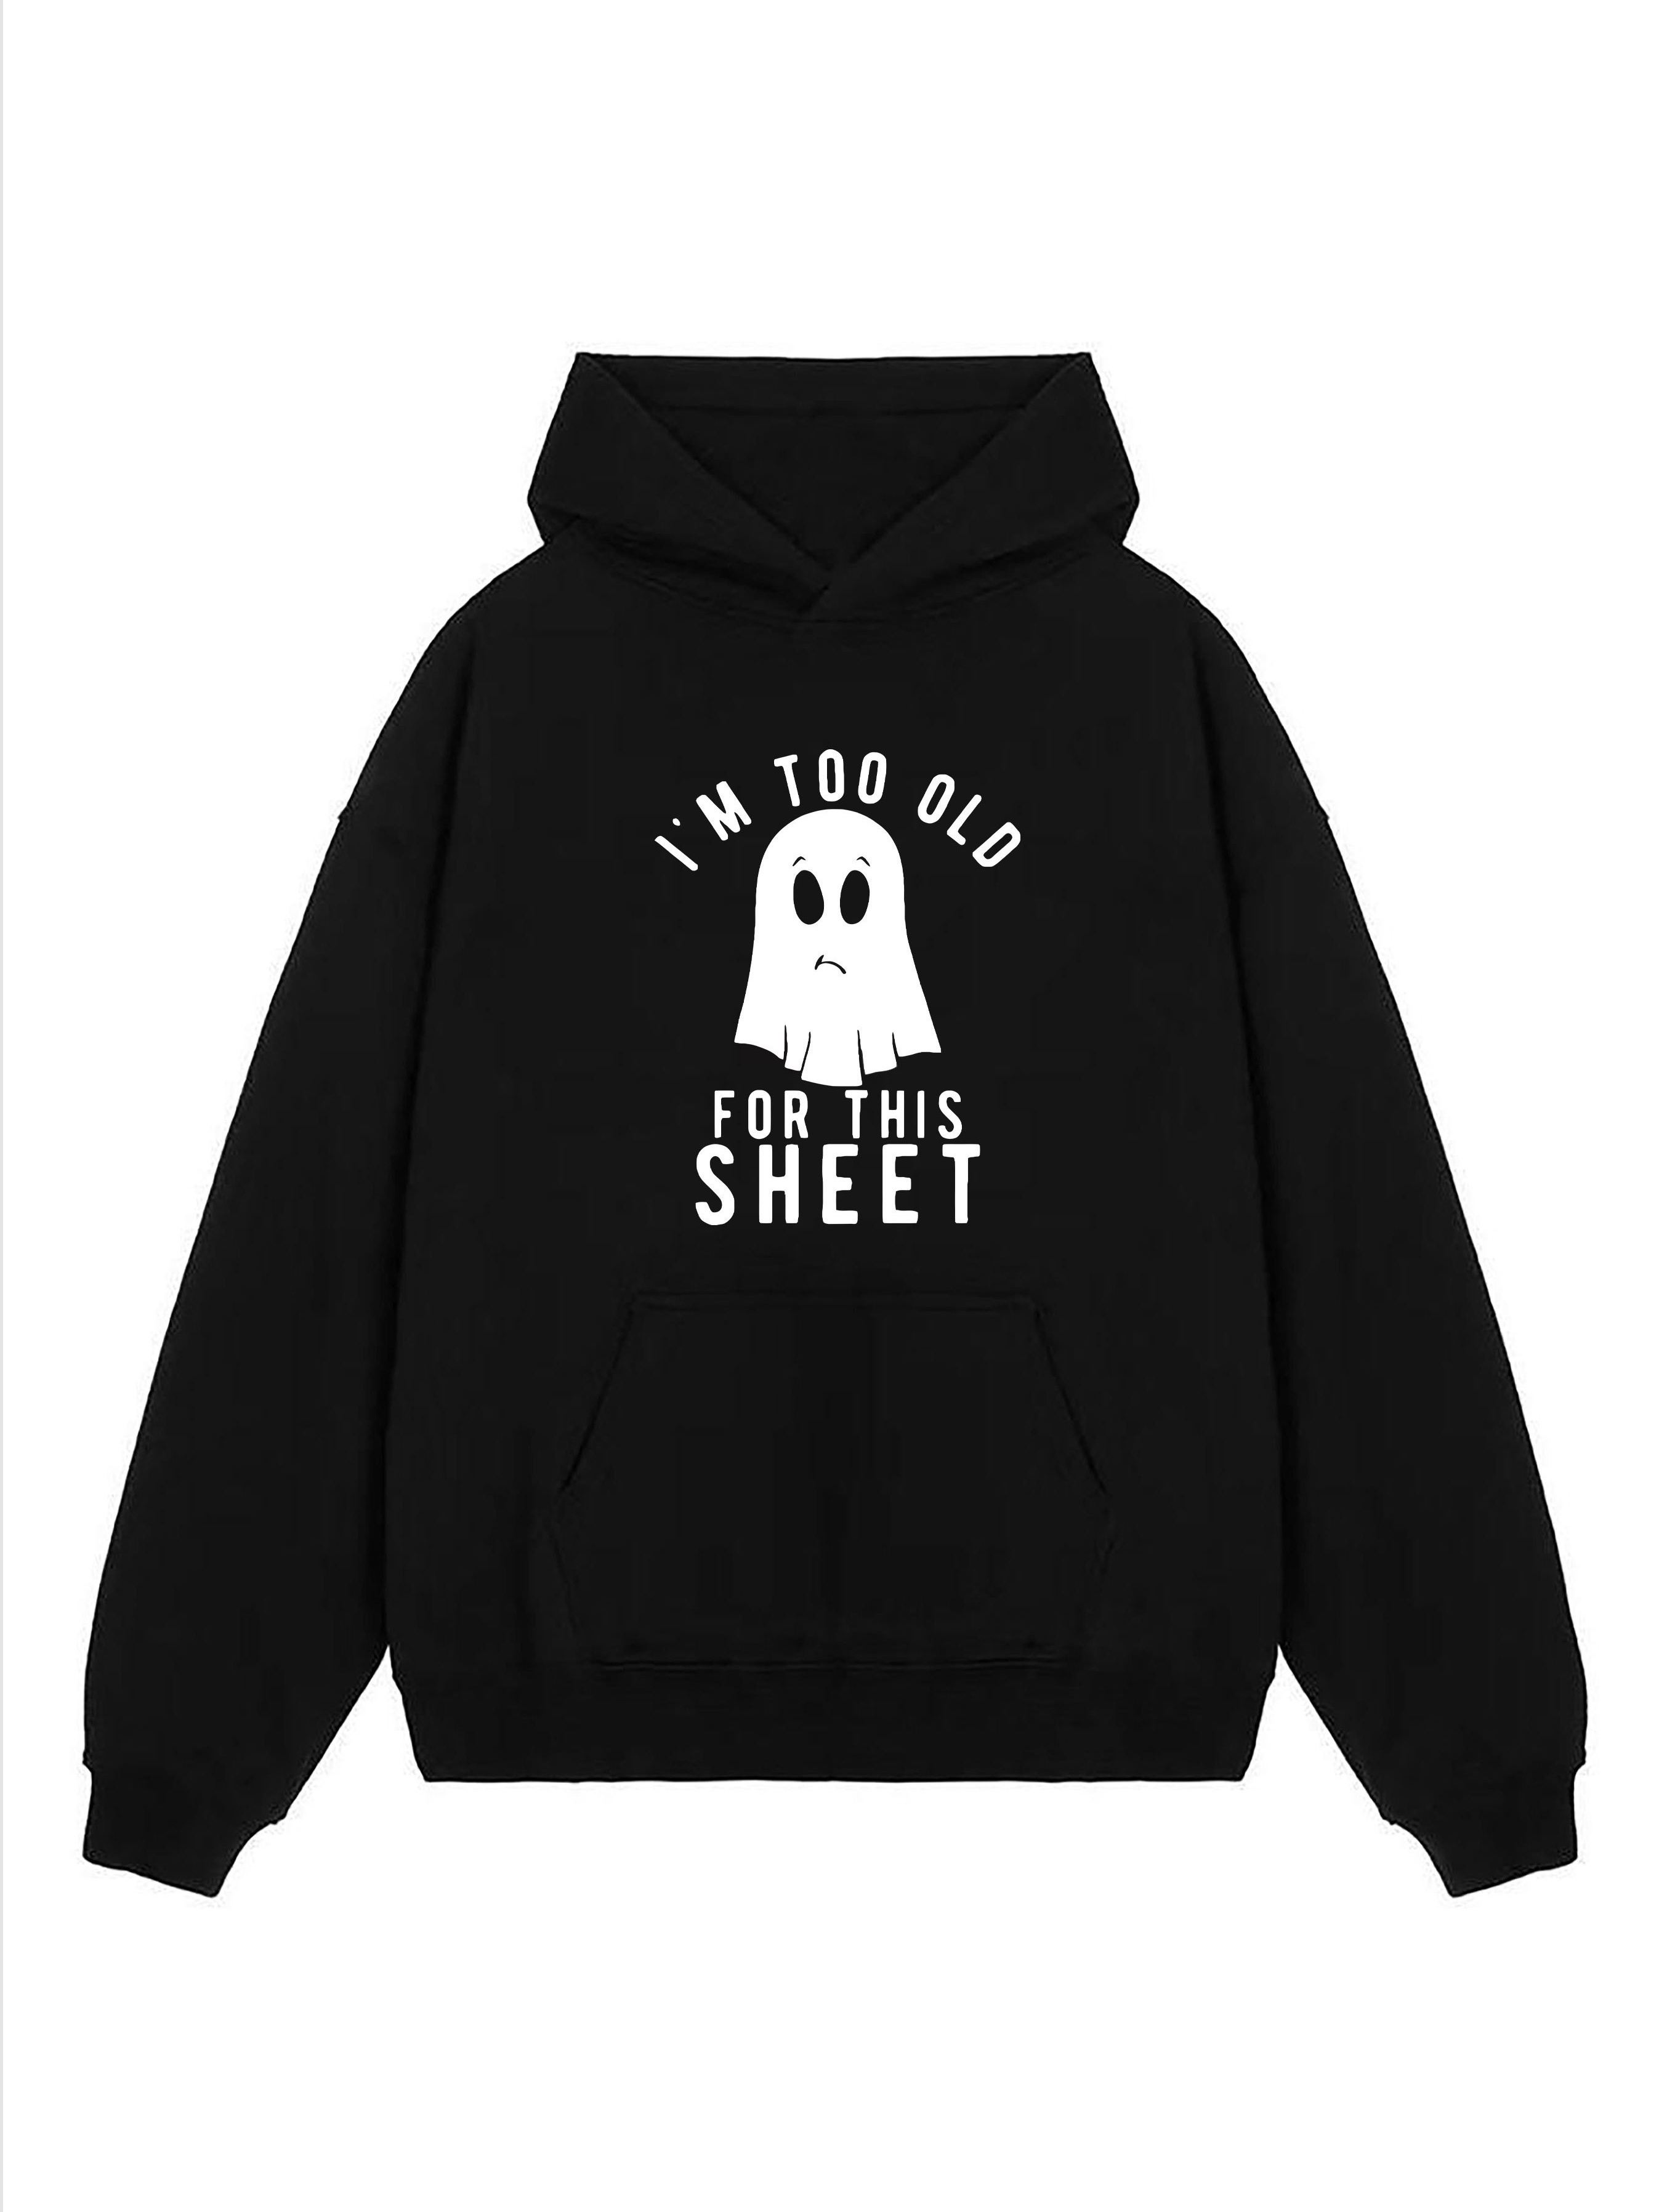 Guys Slogan Ghost Print Sweatshirt  Printed sweatshirts, Sweatshirts,  Slogan pullover